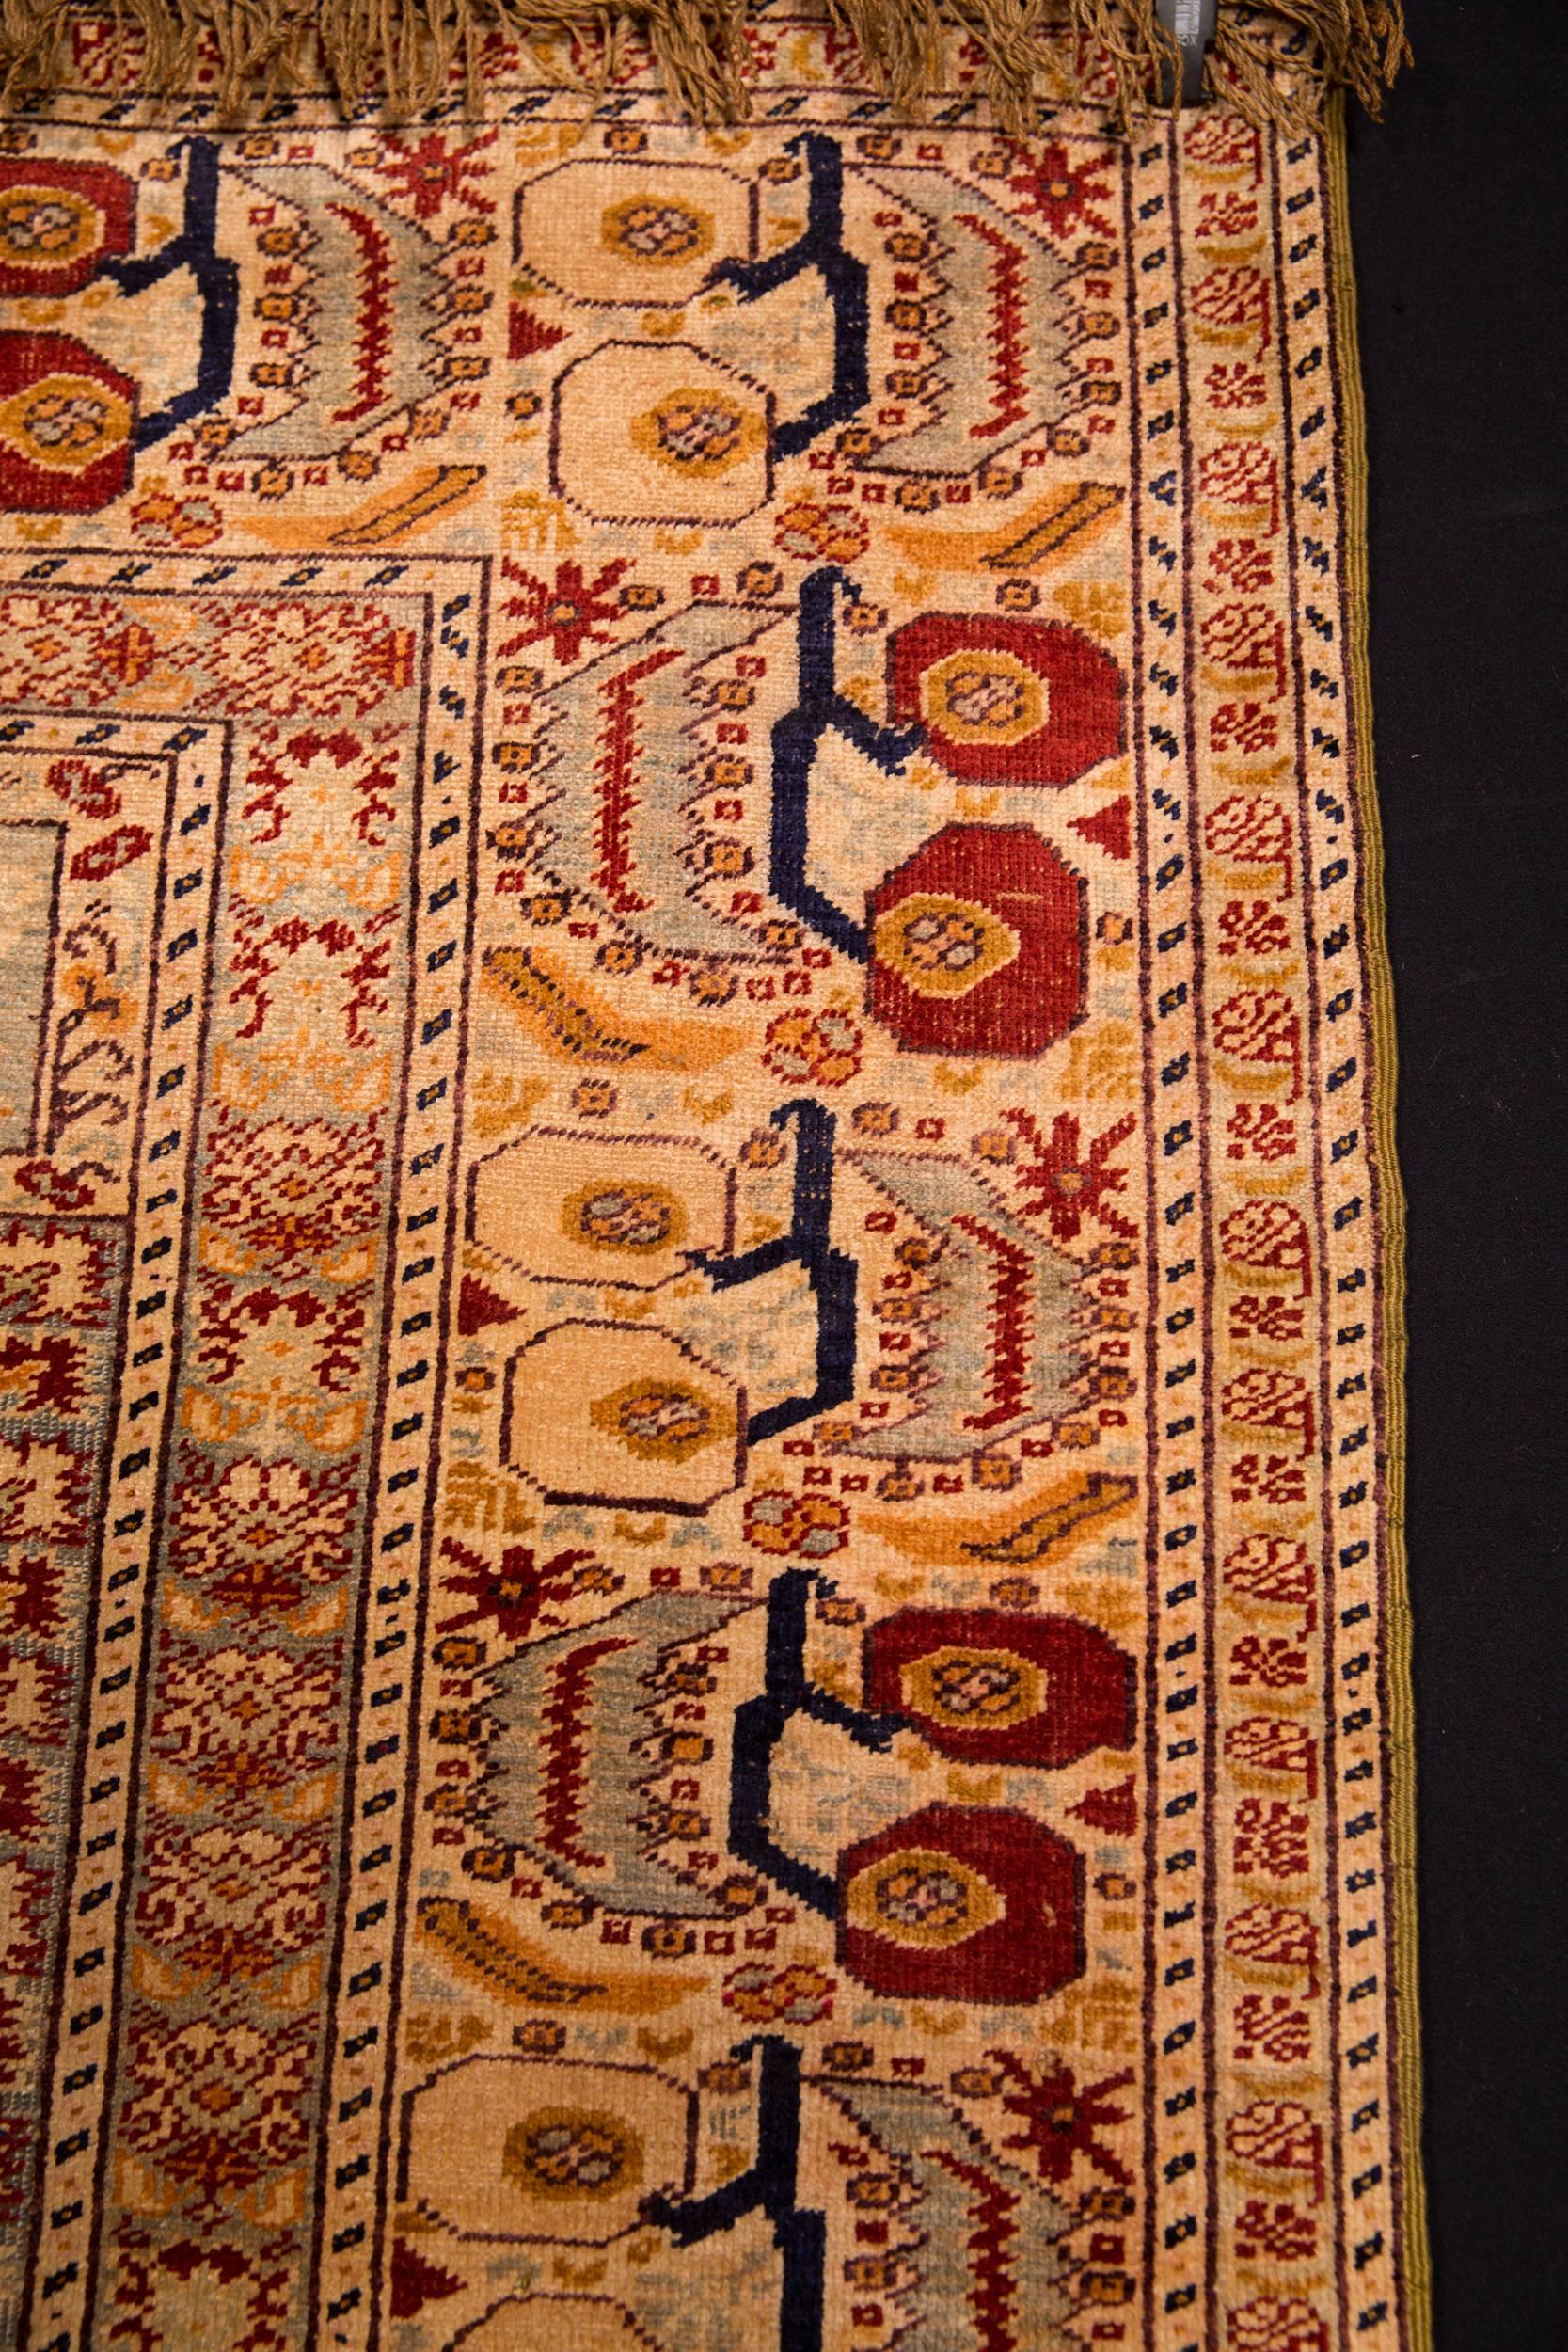 19th Century Beautiful Antique Silk Carpet, circa 1900